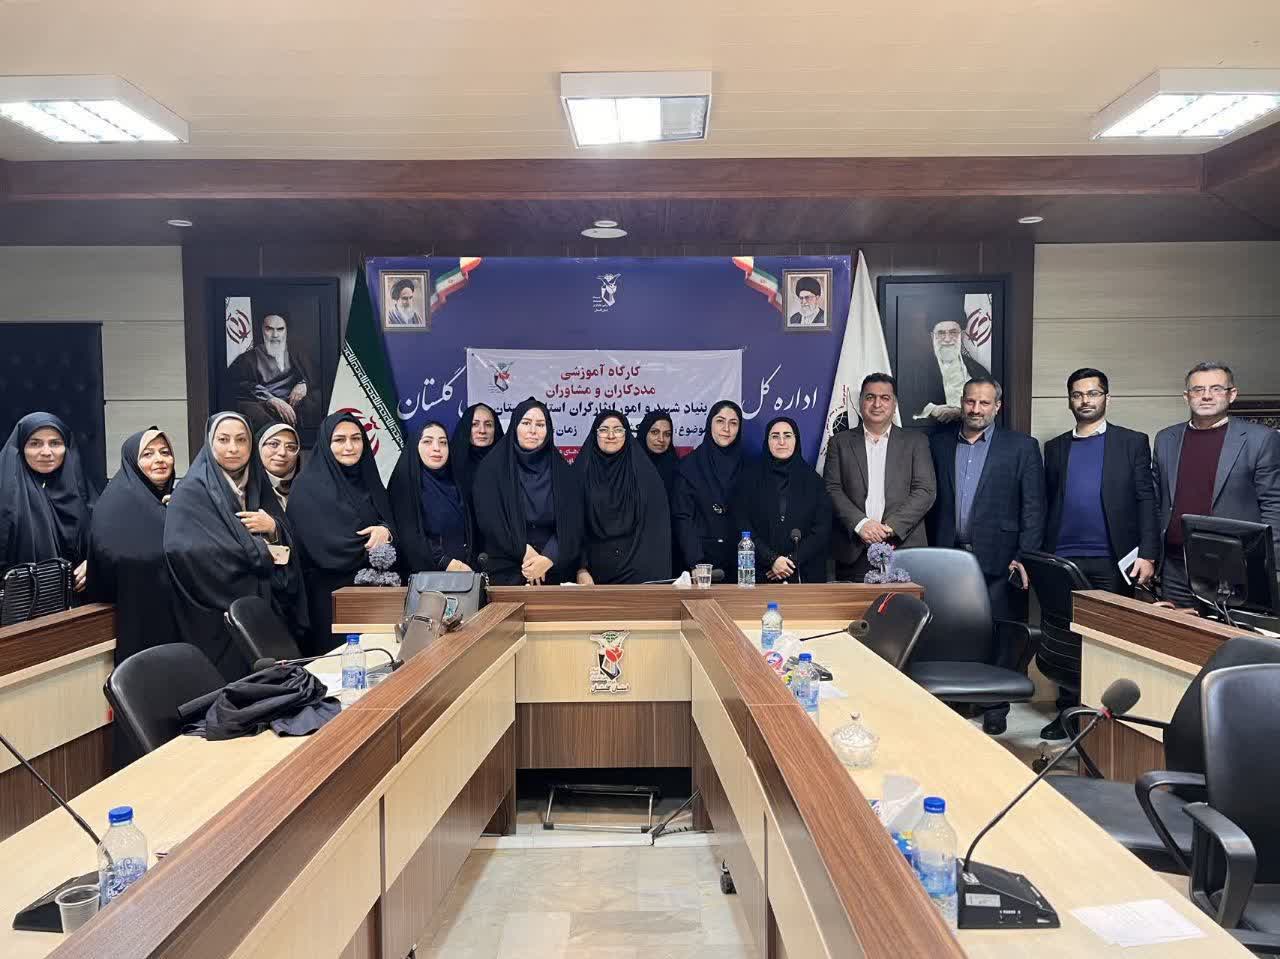 کارگاه آموزشی مداخله در بحران ویژه مددکاران و مشاوران بنیاد استان گلستان برگزار شد